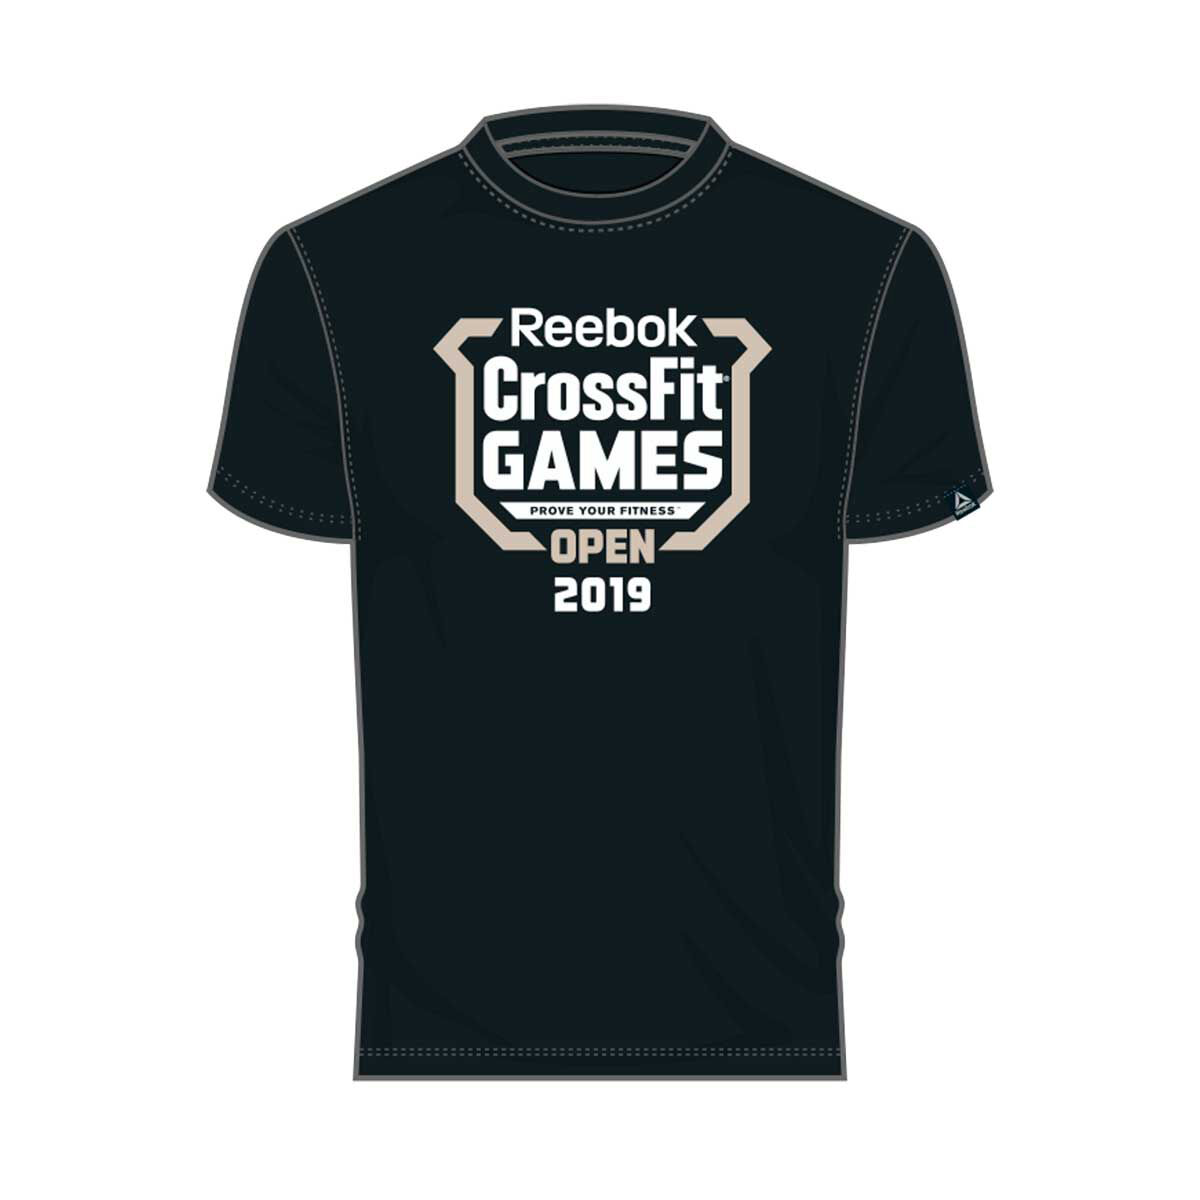 reebok crossfit open 2019 t shirt